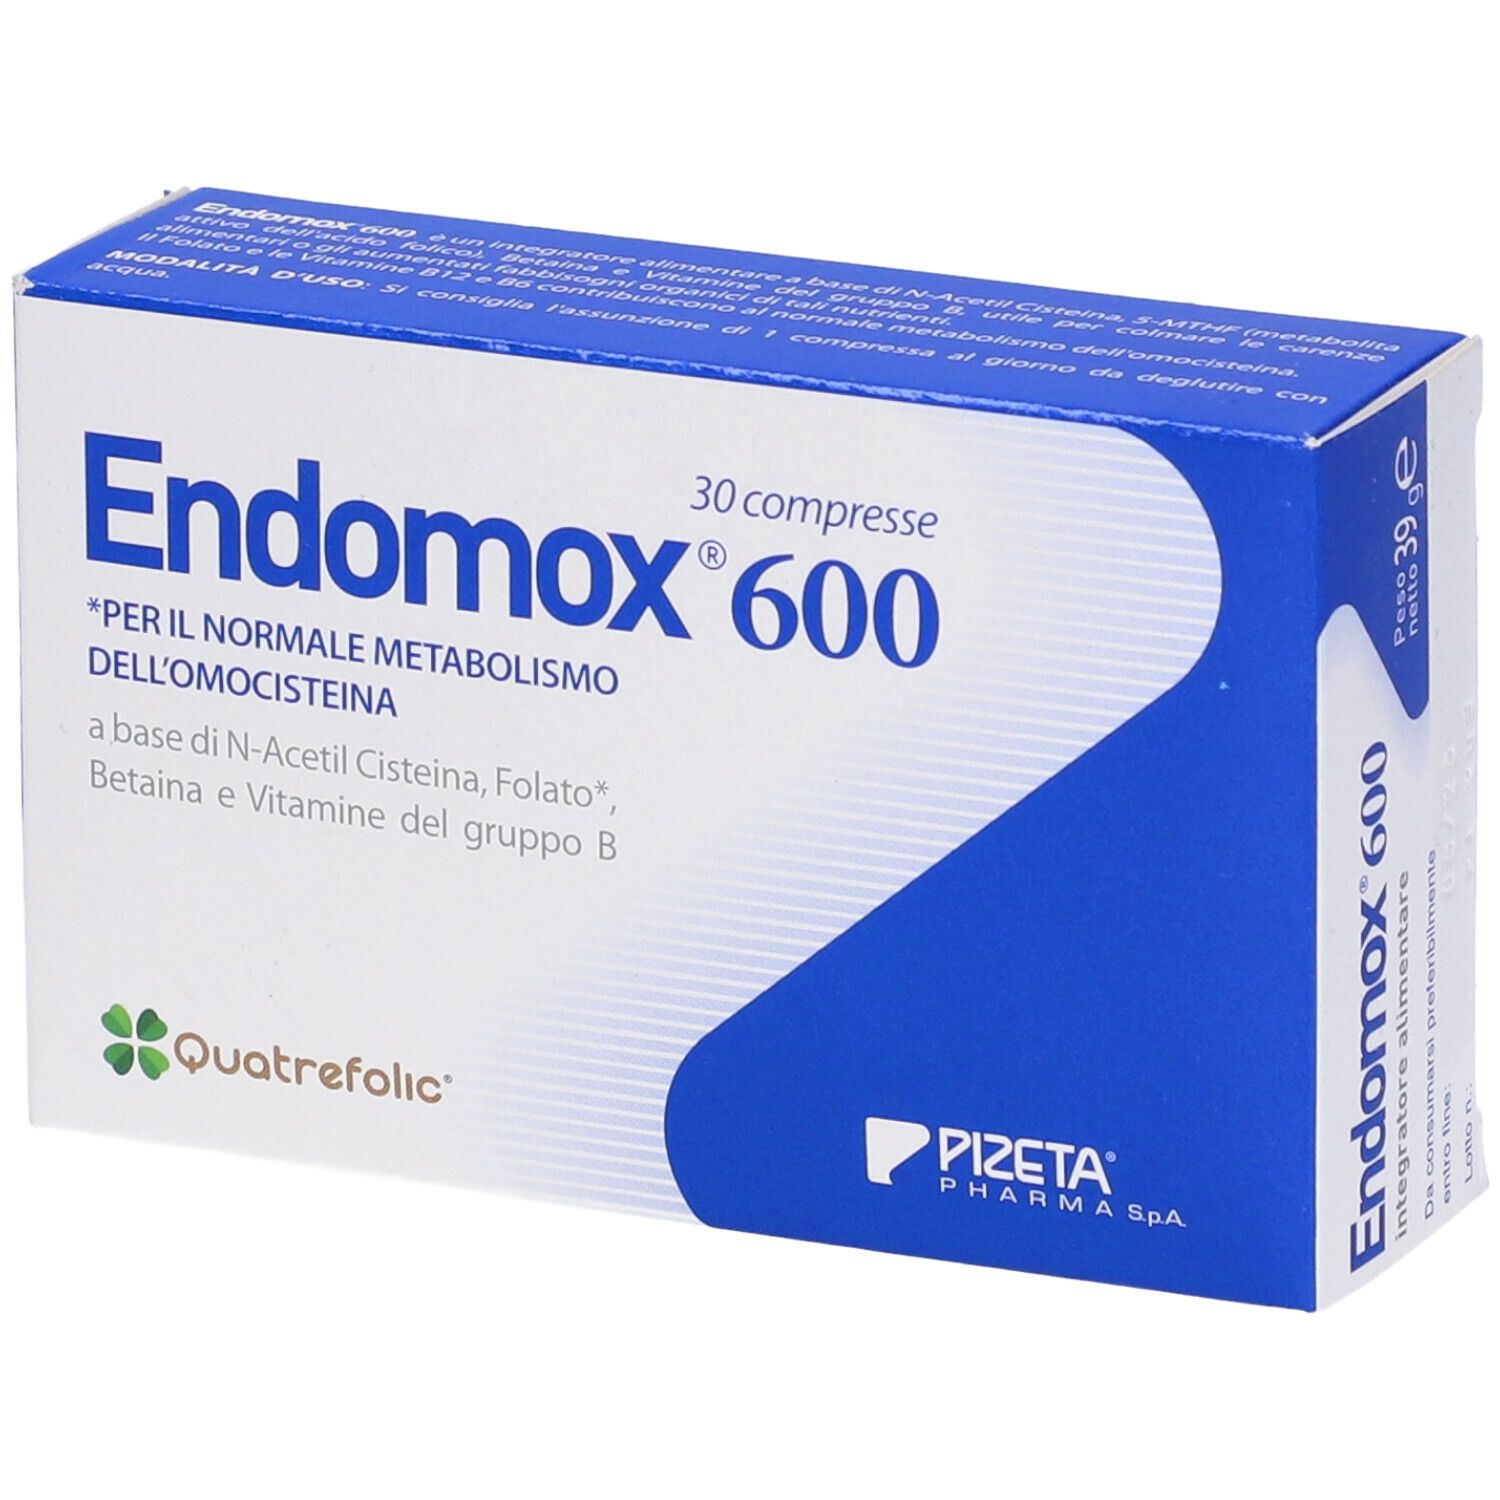 ენდომოქსი / ENDOMOX 600